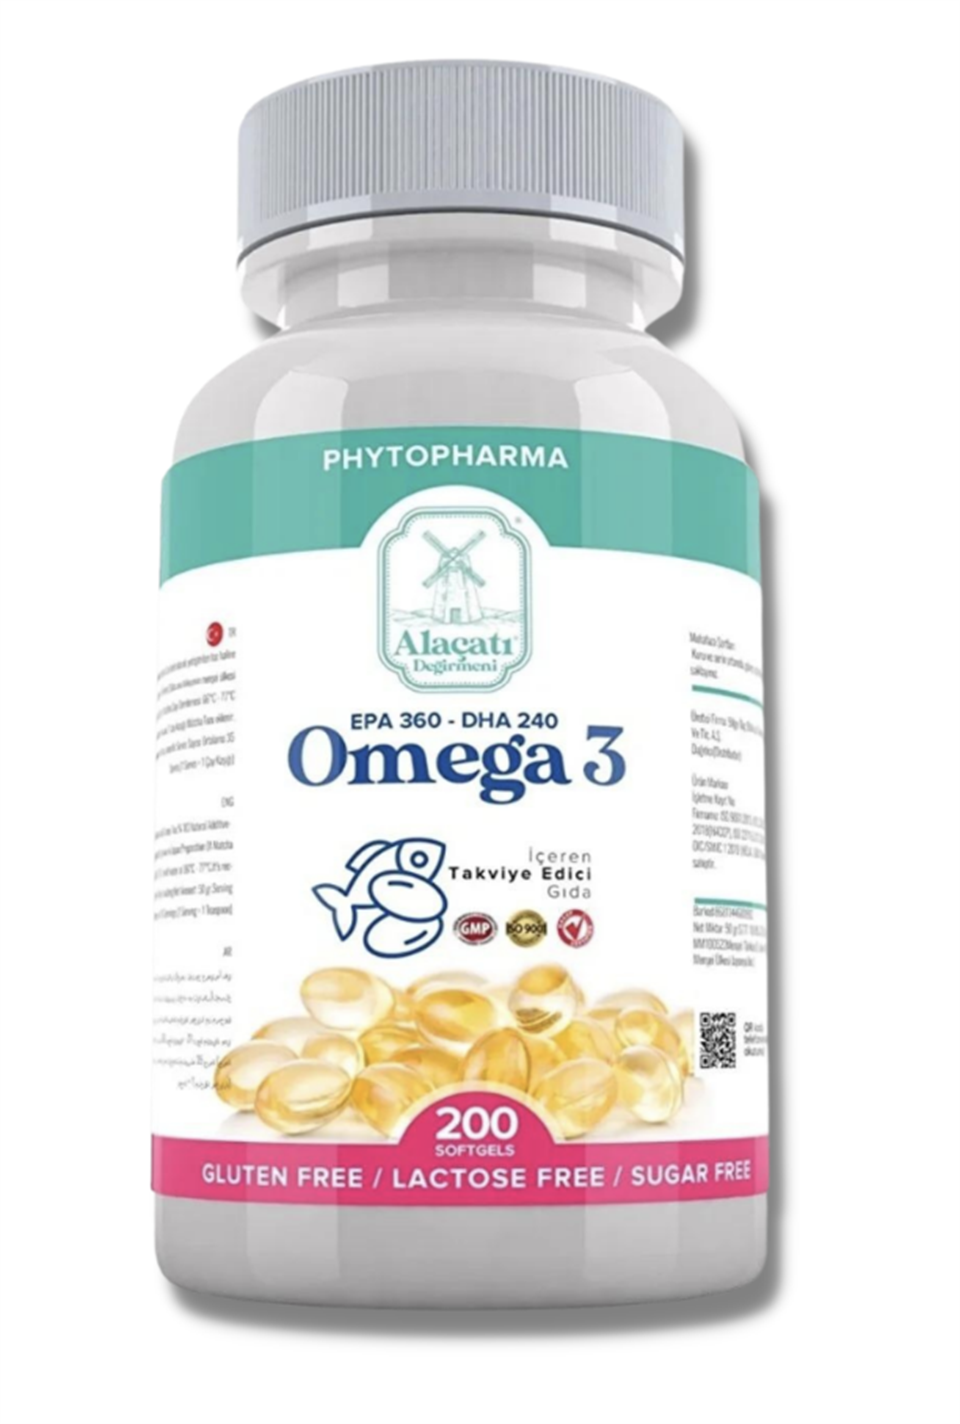 Phytopharma Omega 3 Takviyesi 200 Softjel